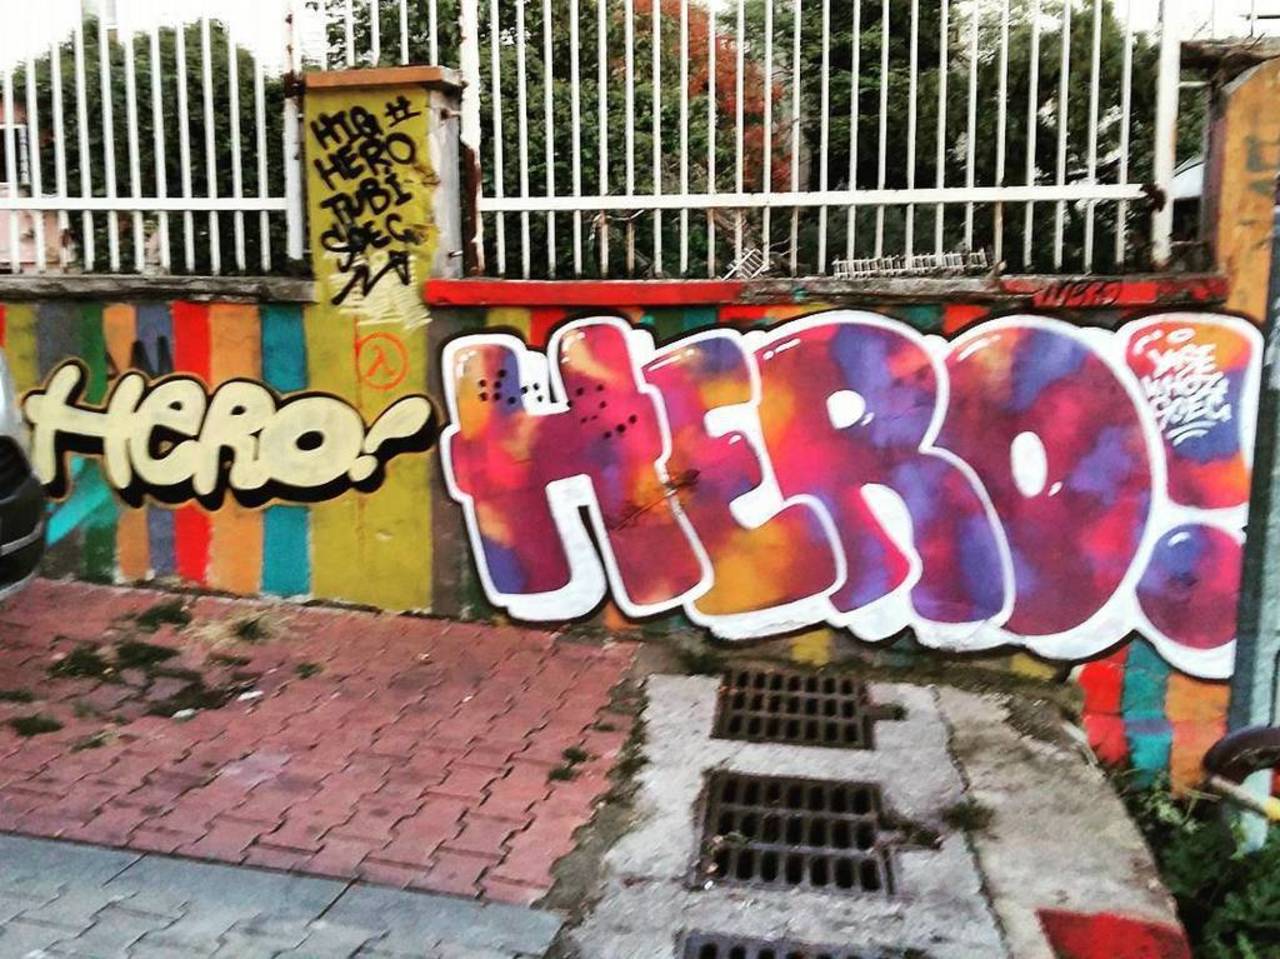 By @highero @dsb_graff #dsb_graff @rsa_graffiti #ingf@streetawesome #streetart #urbanart #graffitiart #graffiti #in… https://t.co/yqKq7qvaa7